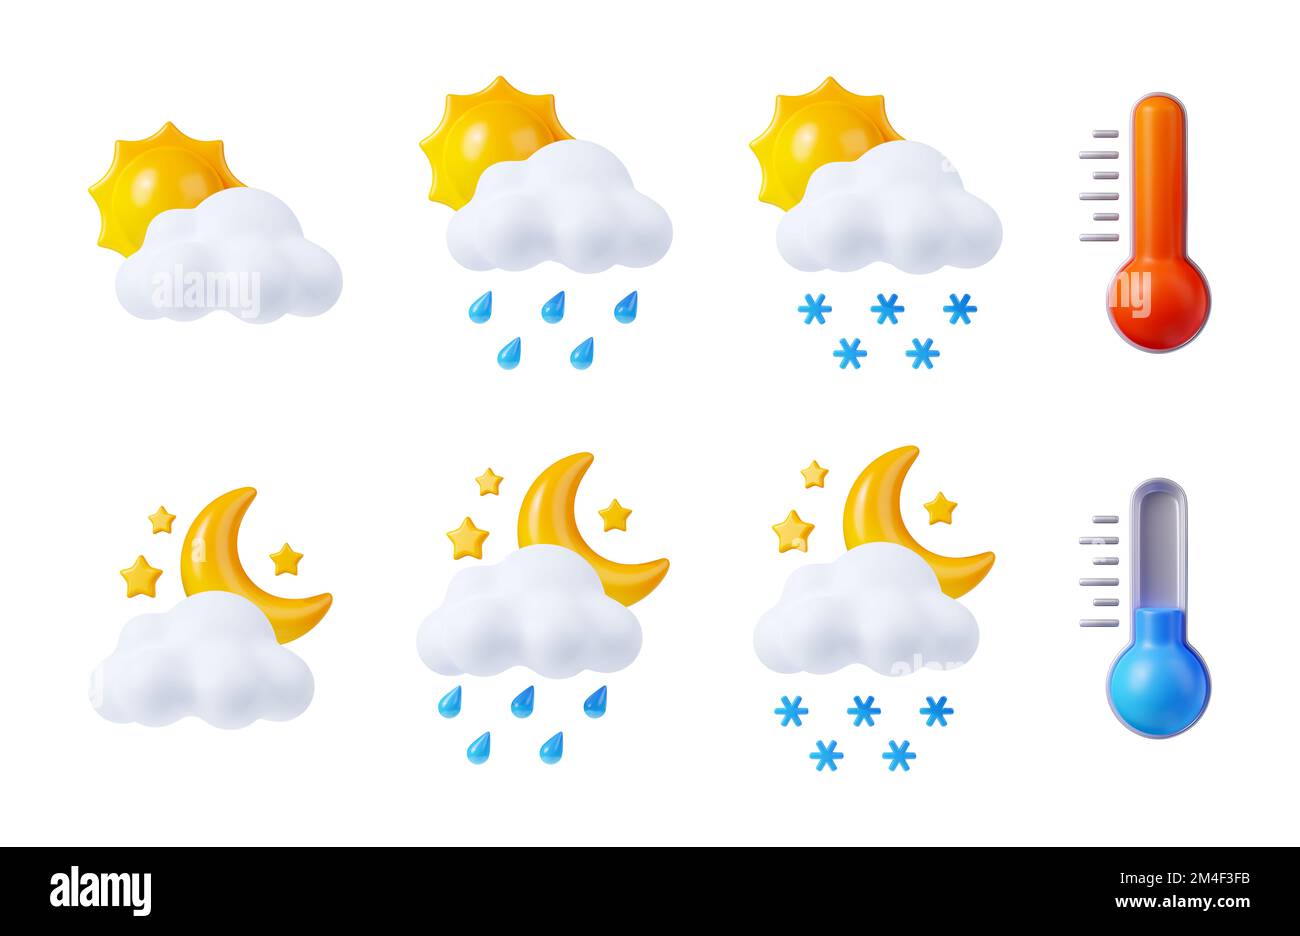 Previsioni del tempo, icone meteorologiche con sole, luna, nuvole, gocce di pioggia, neve e termometri.simboli giorno e notte per il tempo piovoso e nevoso, temperatura dell'aria calda e fredda, set di rendering 3D Foto Stock